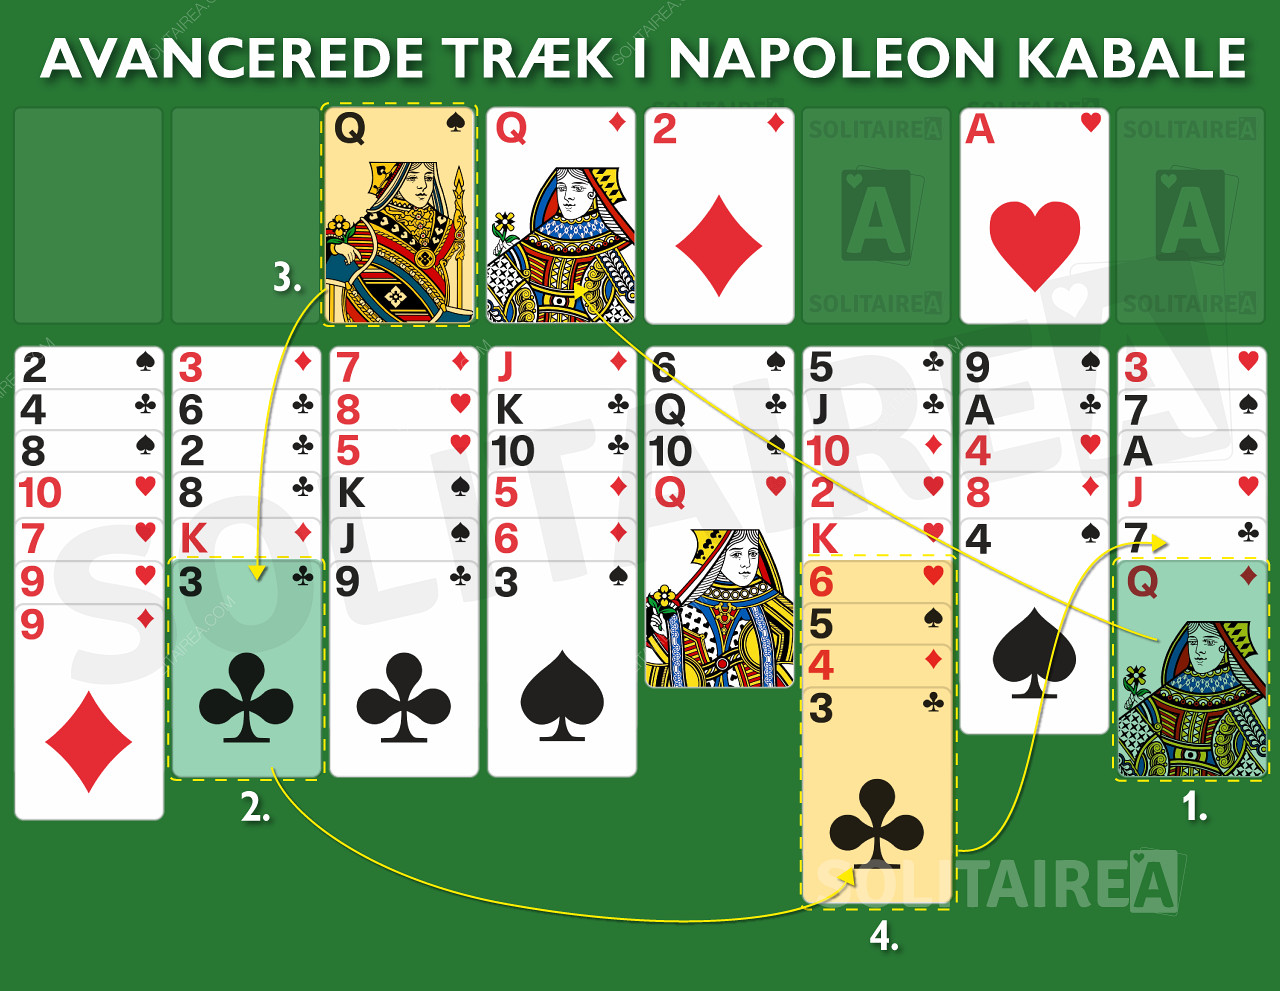 Napoleon Kabale - Avancerede træk og strategi